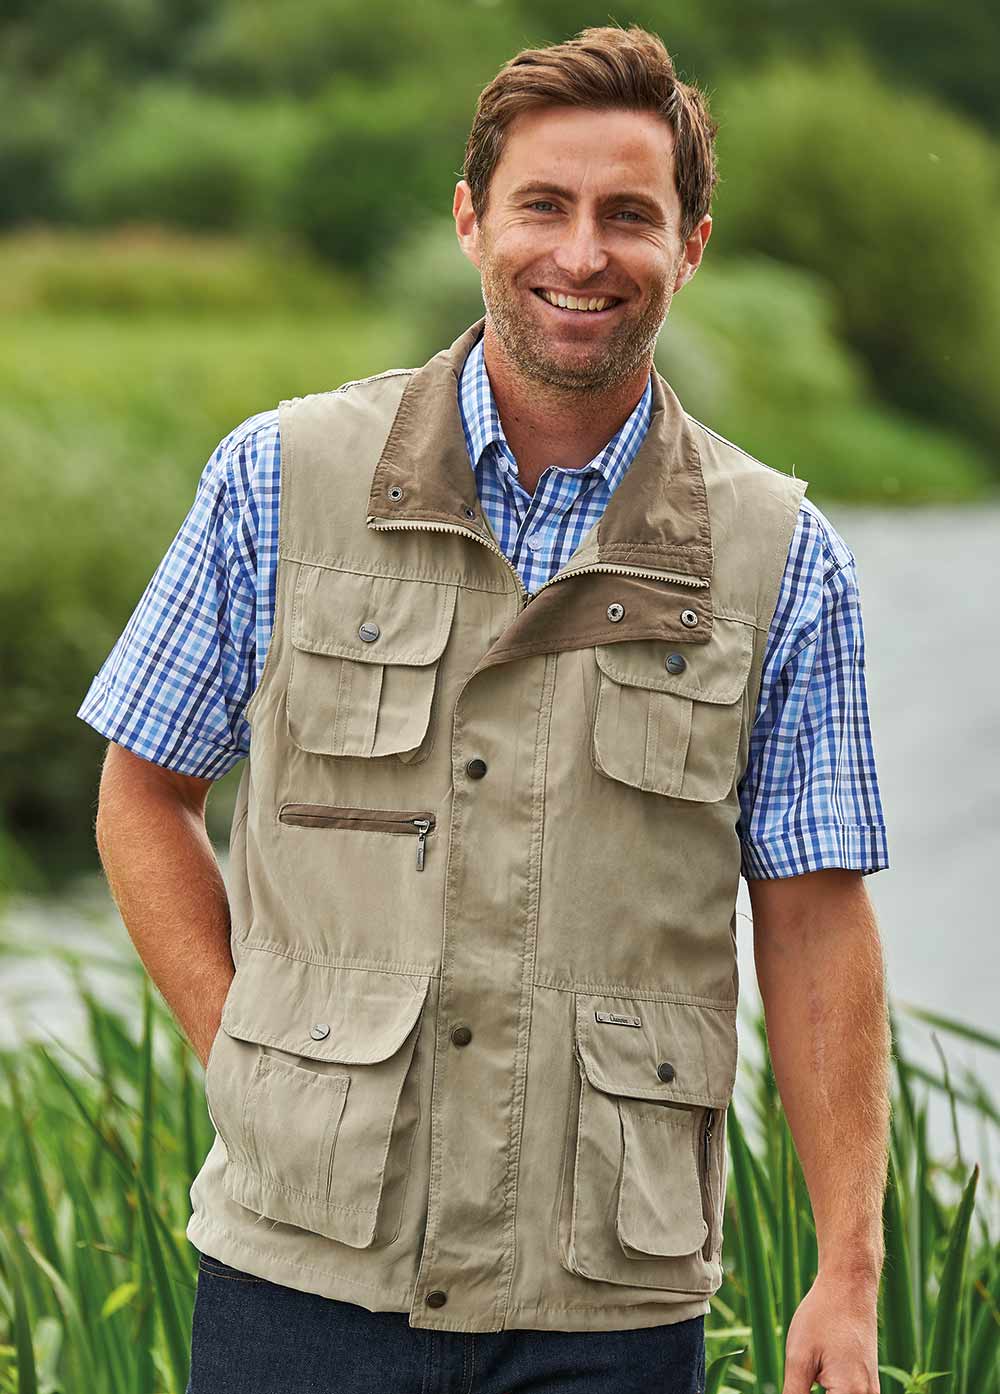 Multi-pocket Vests For Older Men Extra-large Outdoor Shooting